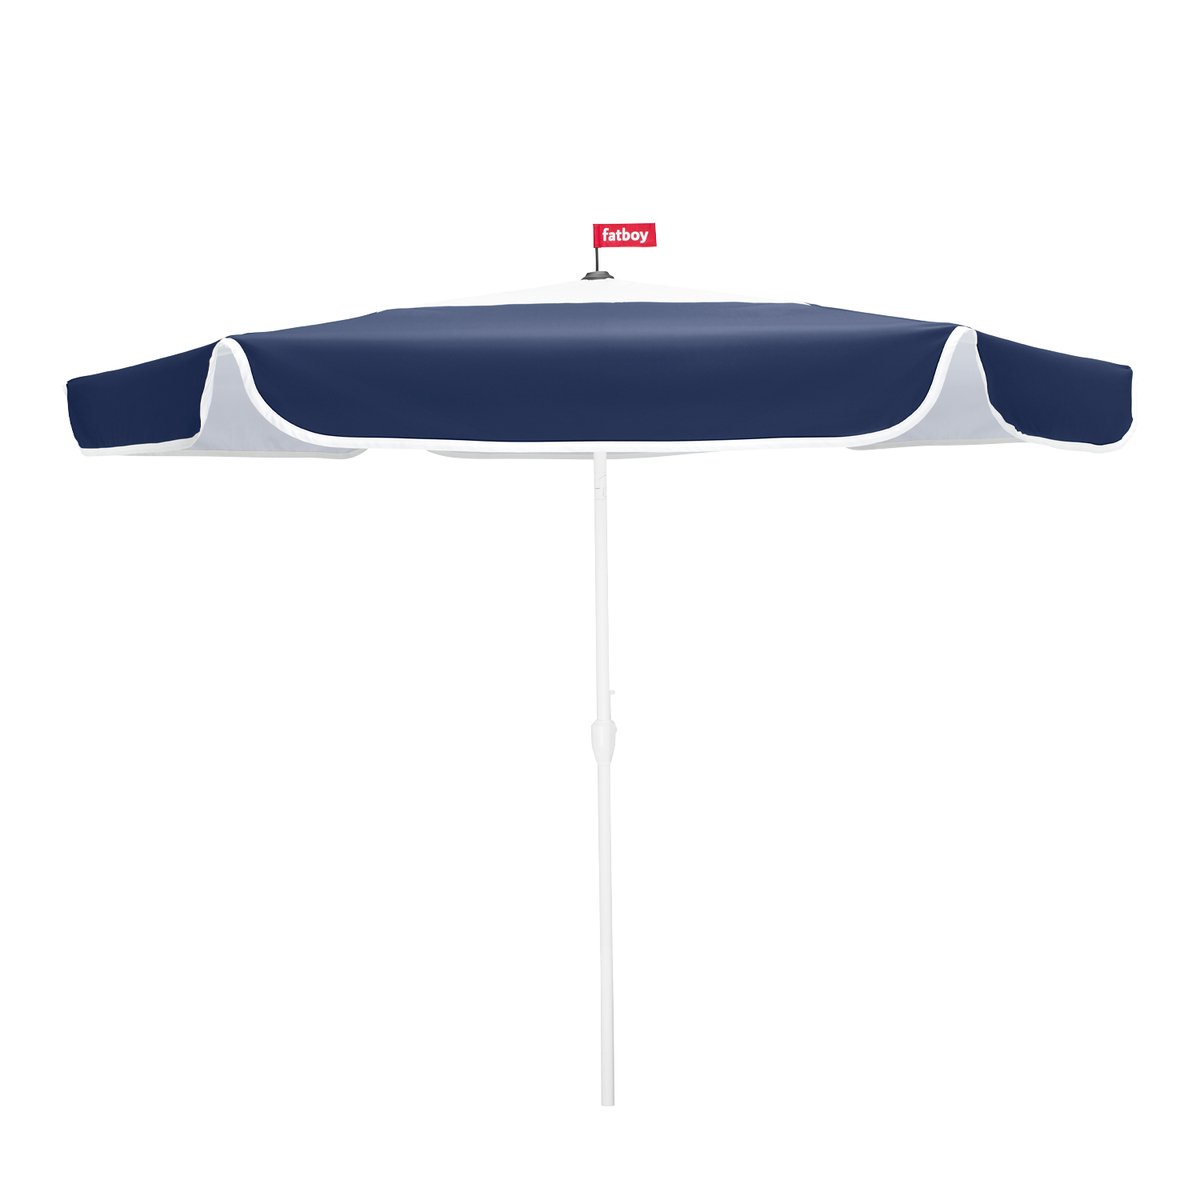 Fatboy parasol, 300 cm, ocean blue | Finnish Design